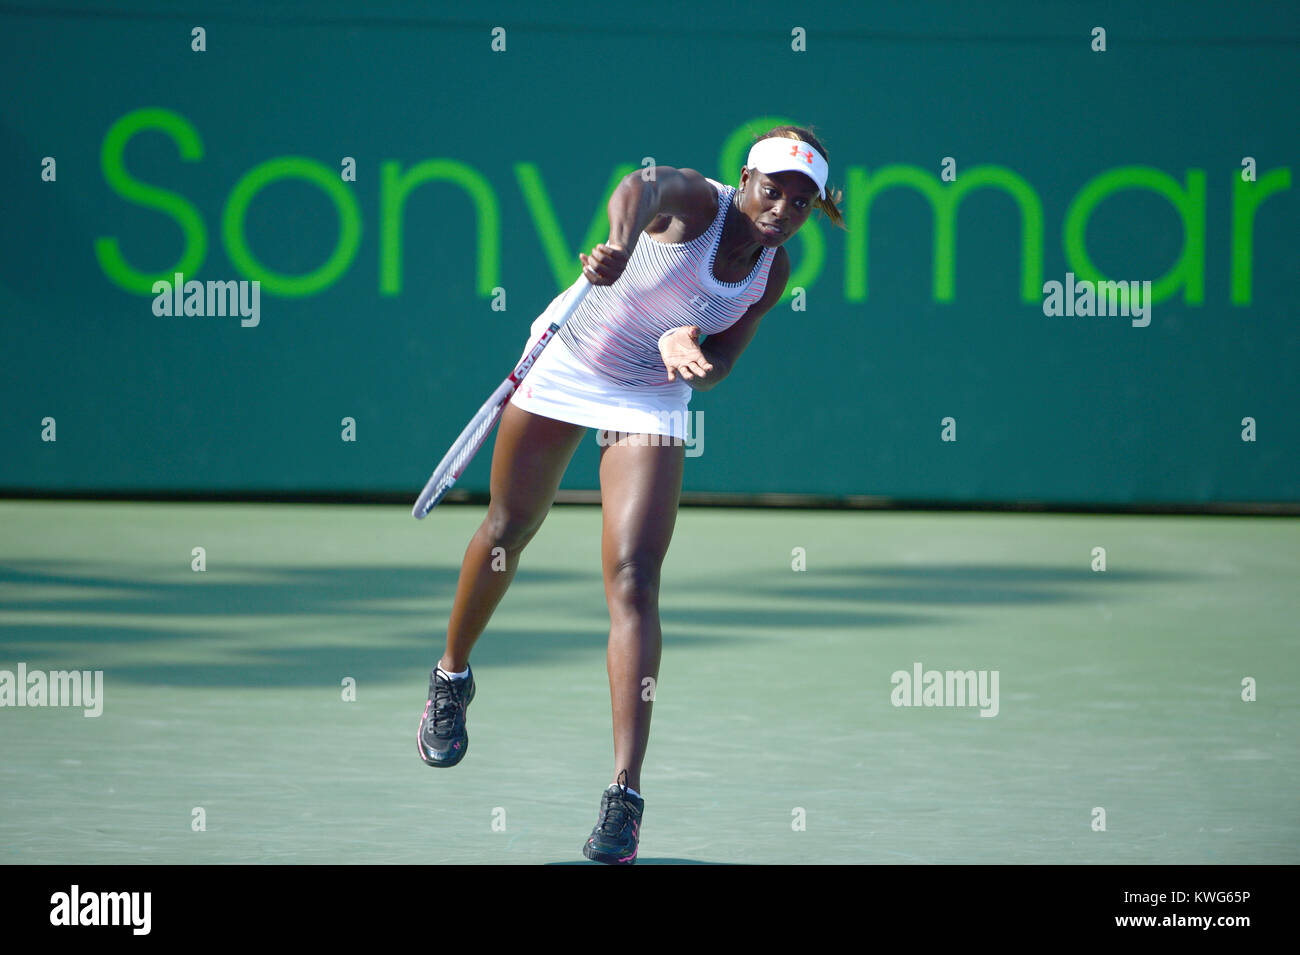 KEY BISCAYNE, Floride - le 24 mars : Maria Sharapova, de la Russie à l'encontre de Sloane Stephens des USA dans leur deuxième tour au Sony Ericsson Open, à Crandon Park Tennis Center le 24 mars 2012 à Key Biscayne, en Floride. People : Sloane Stephens Banque D'Images